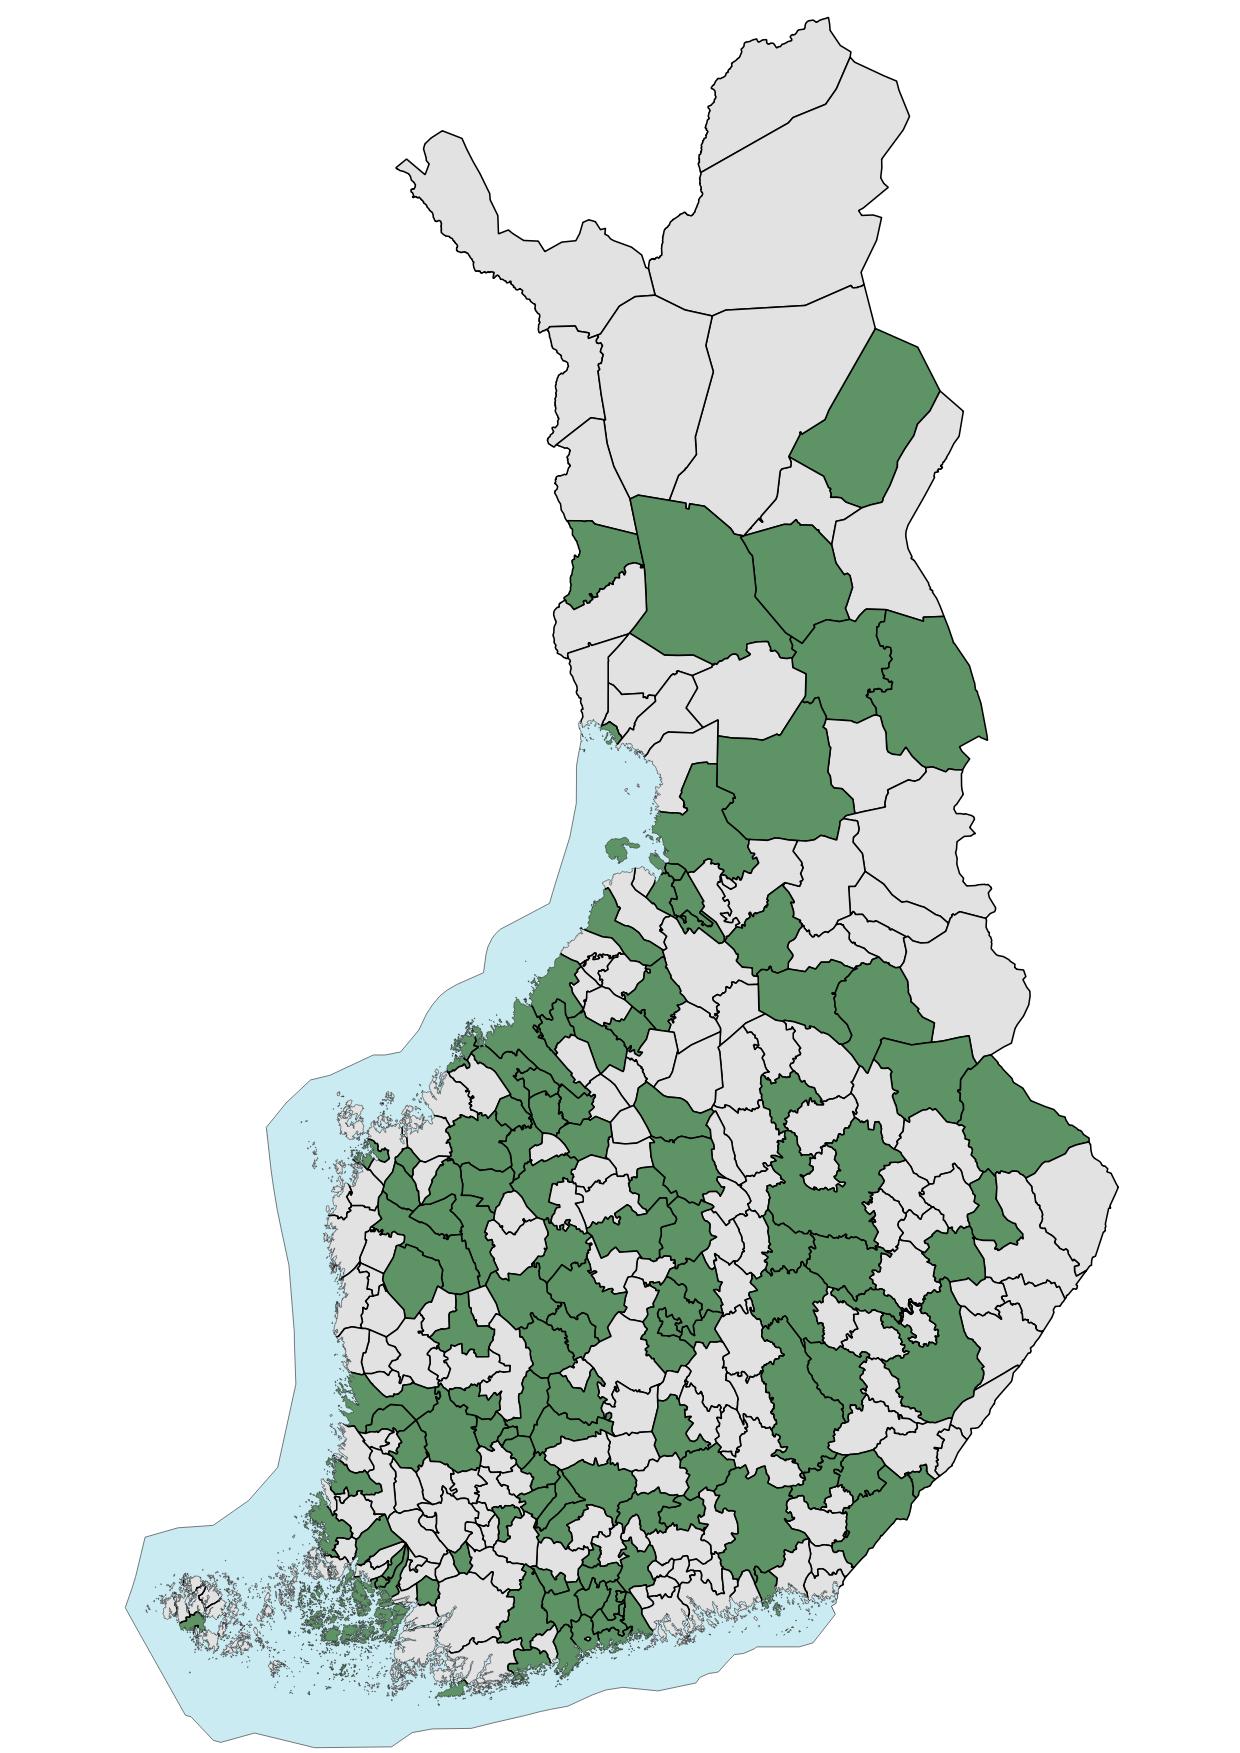 Paikkatietojen kuntafoorumissa edustettuina olevat kunnat merkittynä Suomen kartalle.